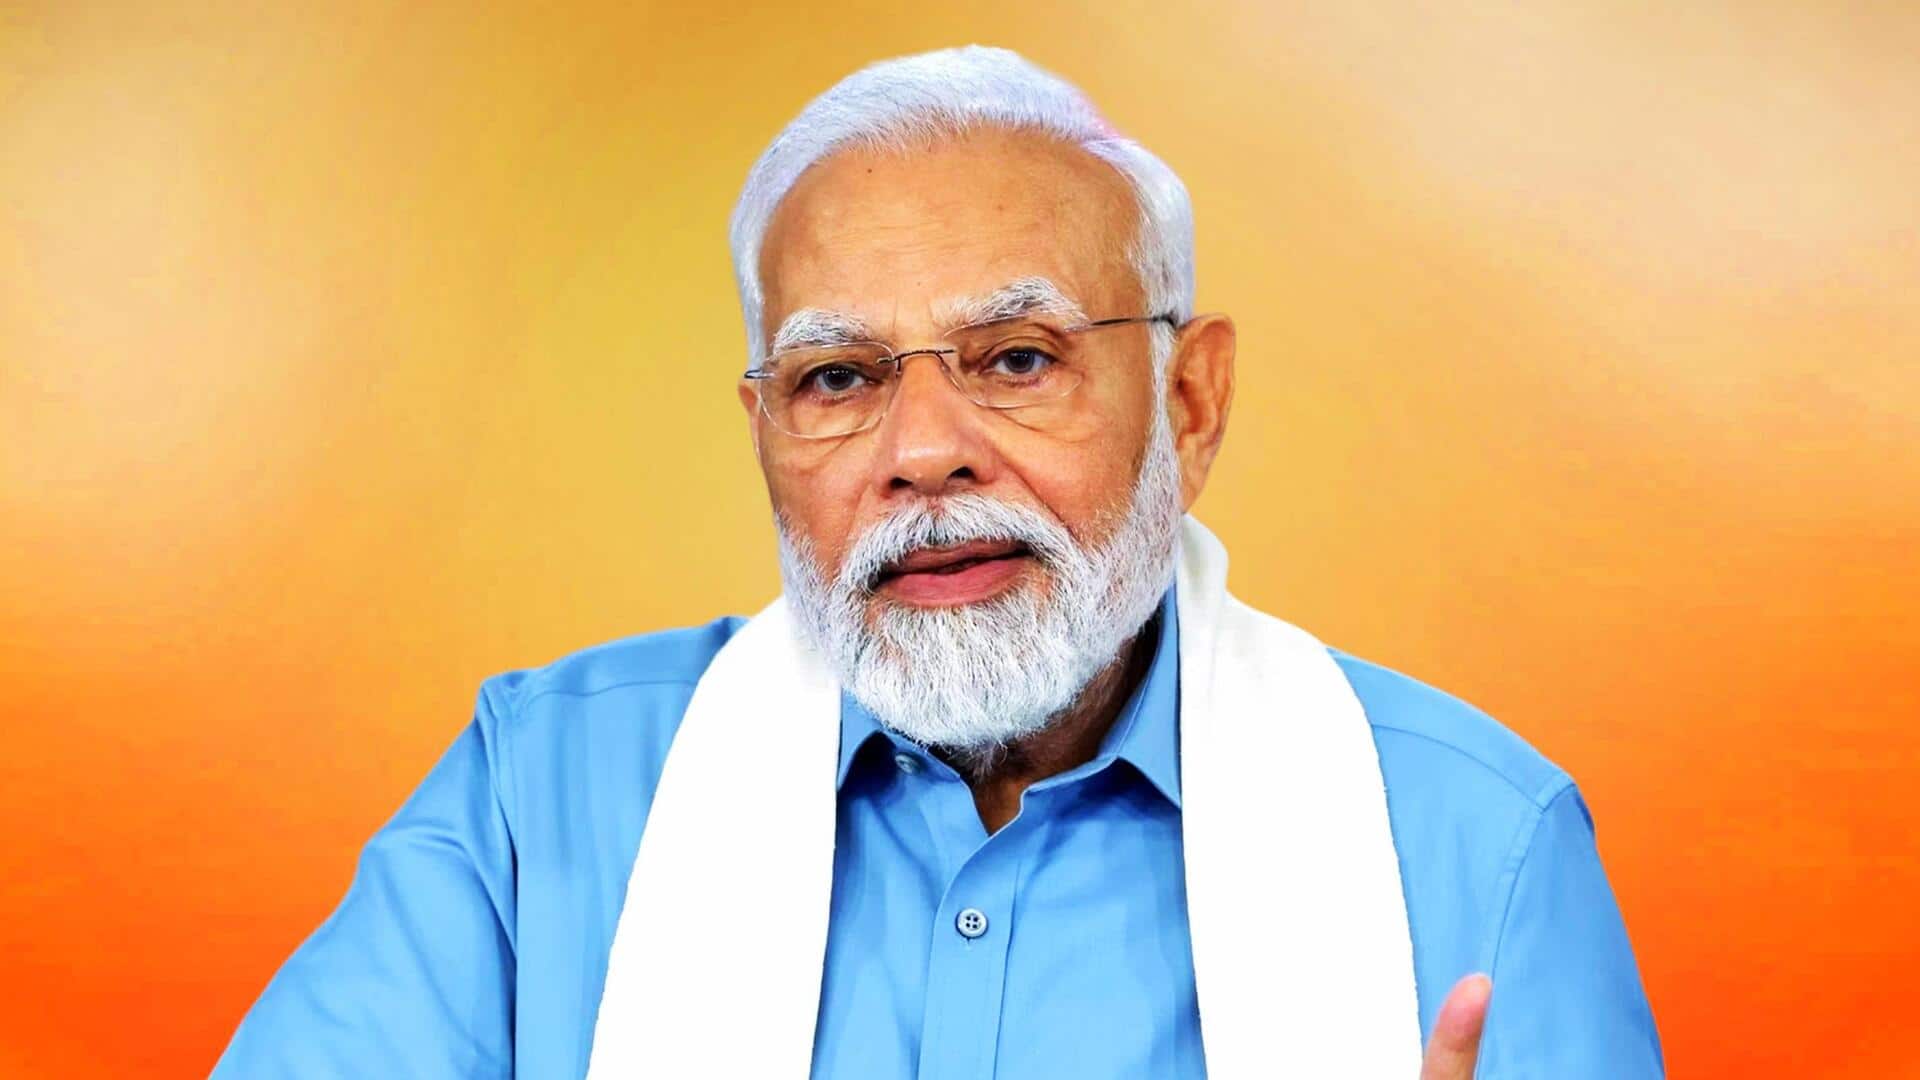 'INDI alliance' wants to finish Sanatan Dharma: Modi